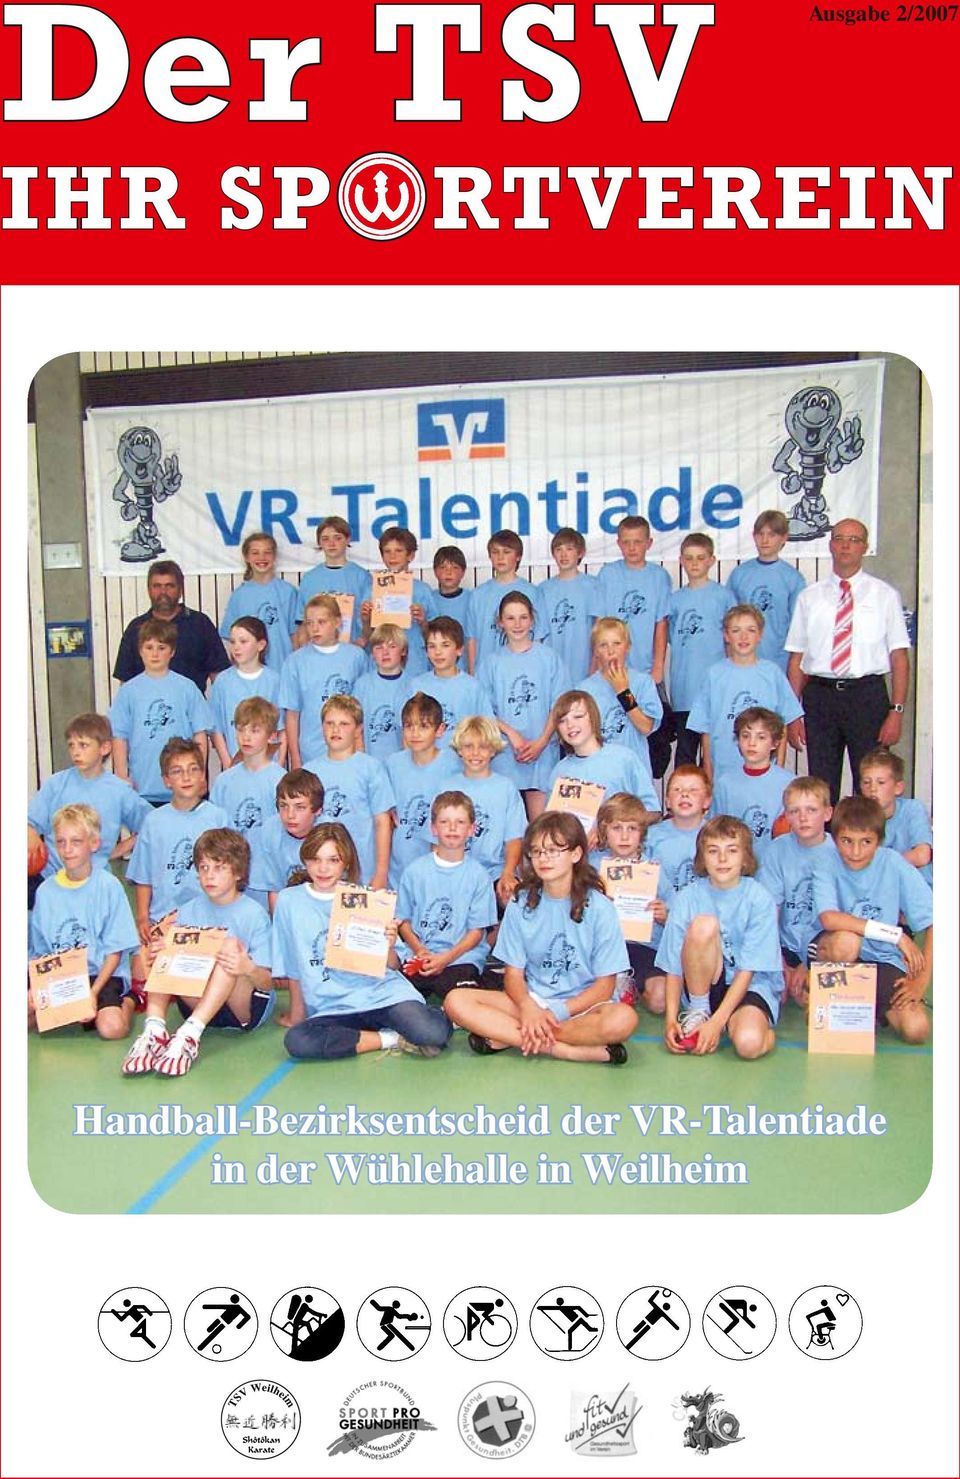 Handball-Bezirksentscheid